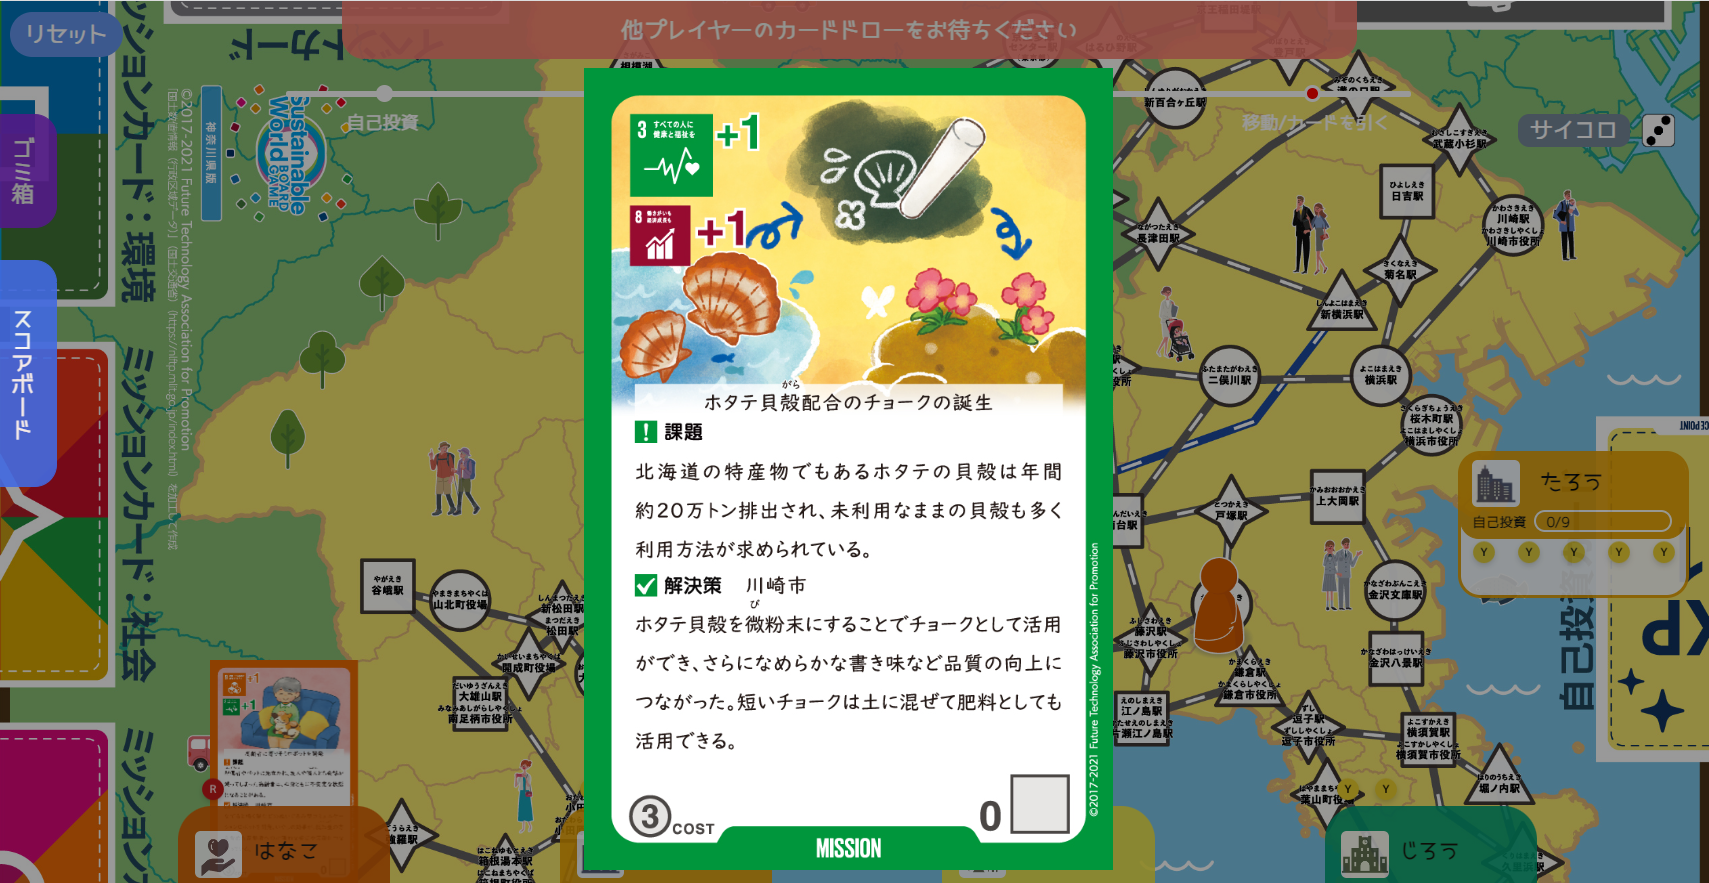 神奈川県版 ふるさとSDGsボードゲーム